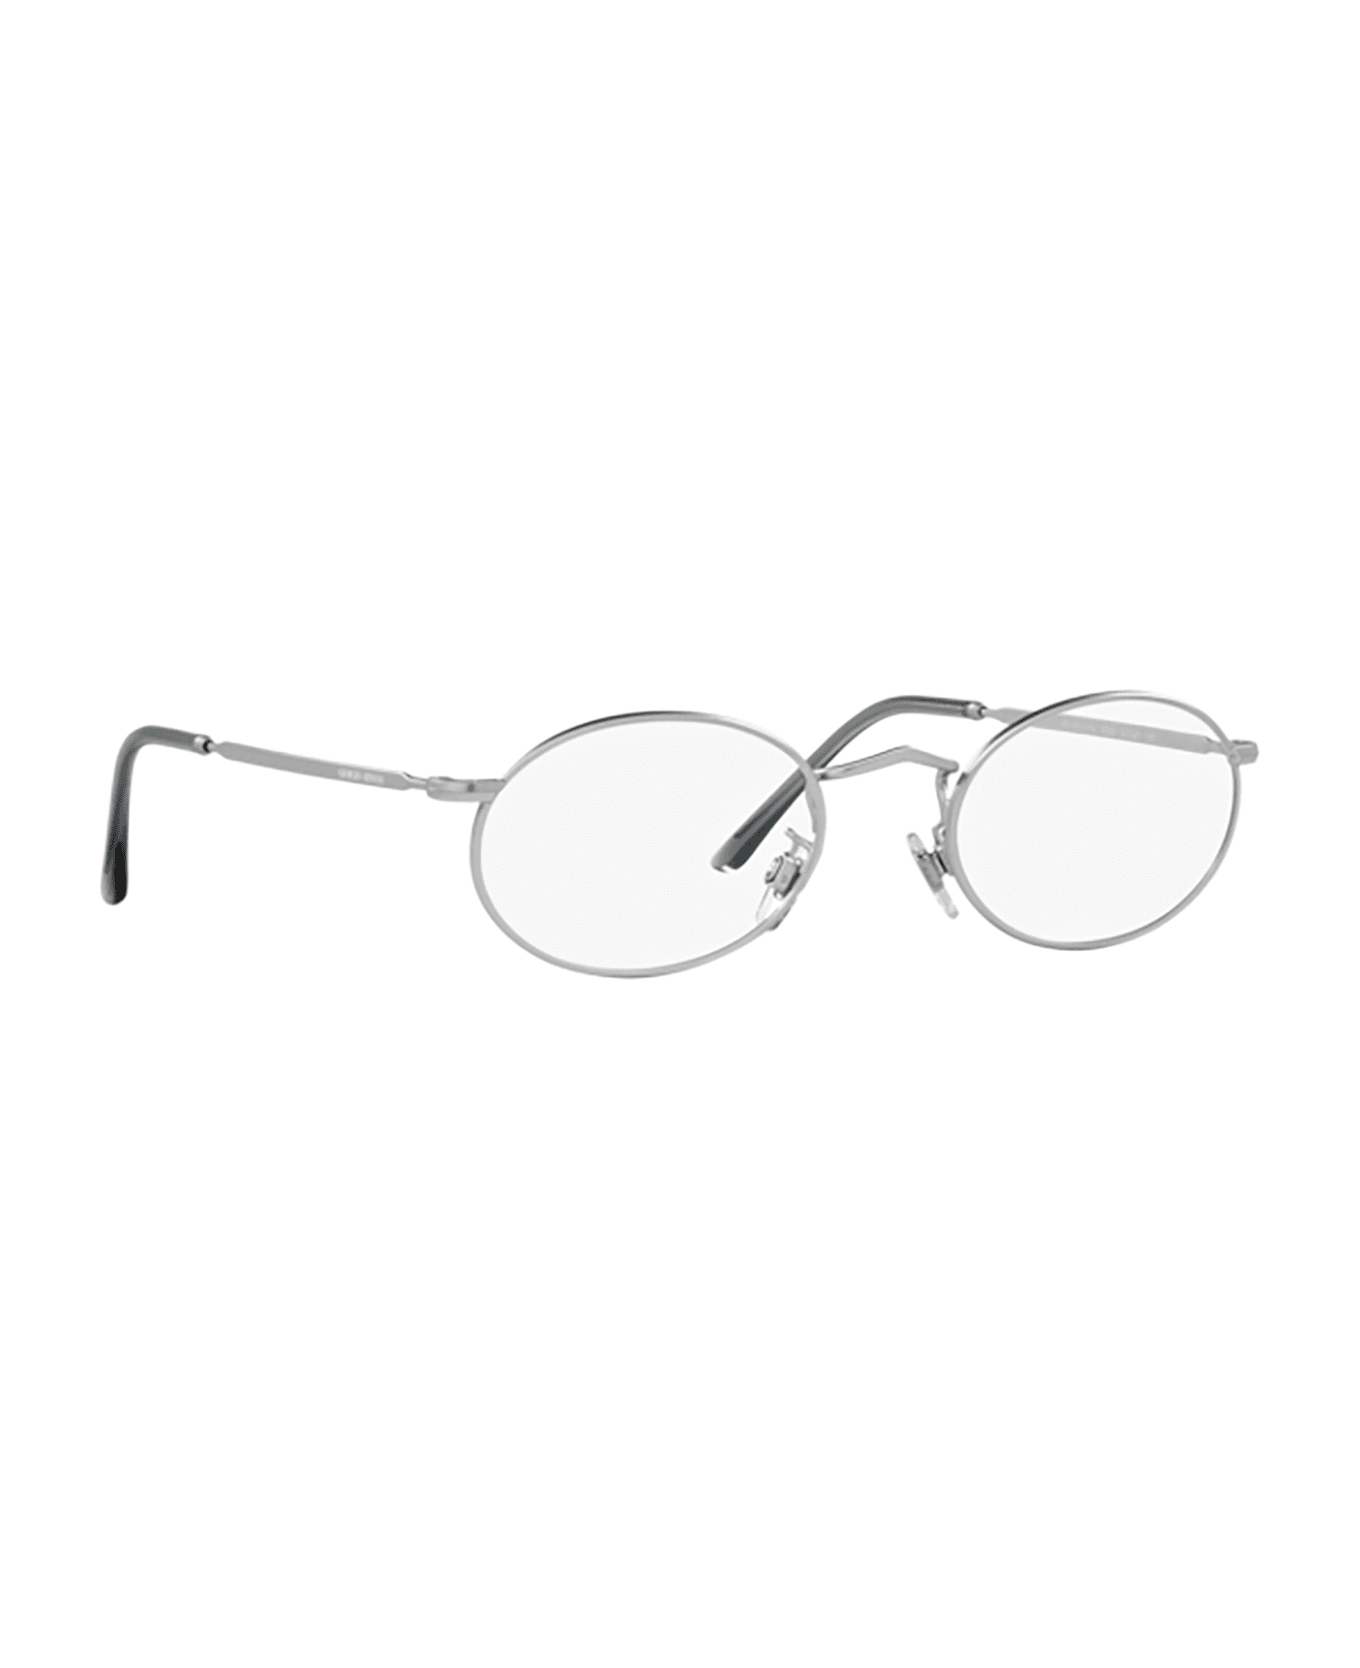 Giorgio Armani Ar 131vm Matte Silver Glasses - Matte Silver アイウェア